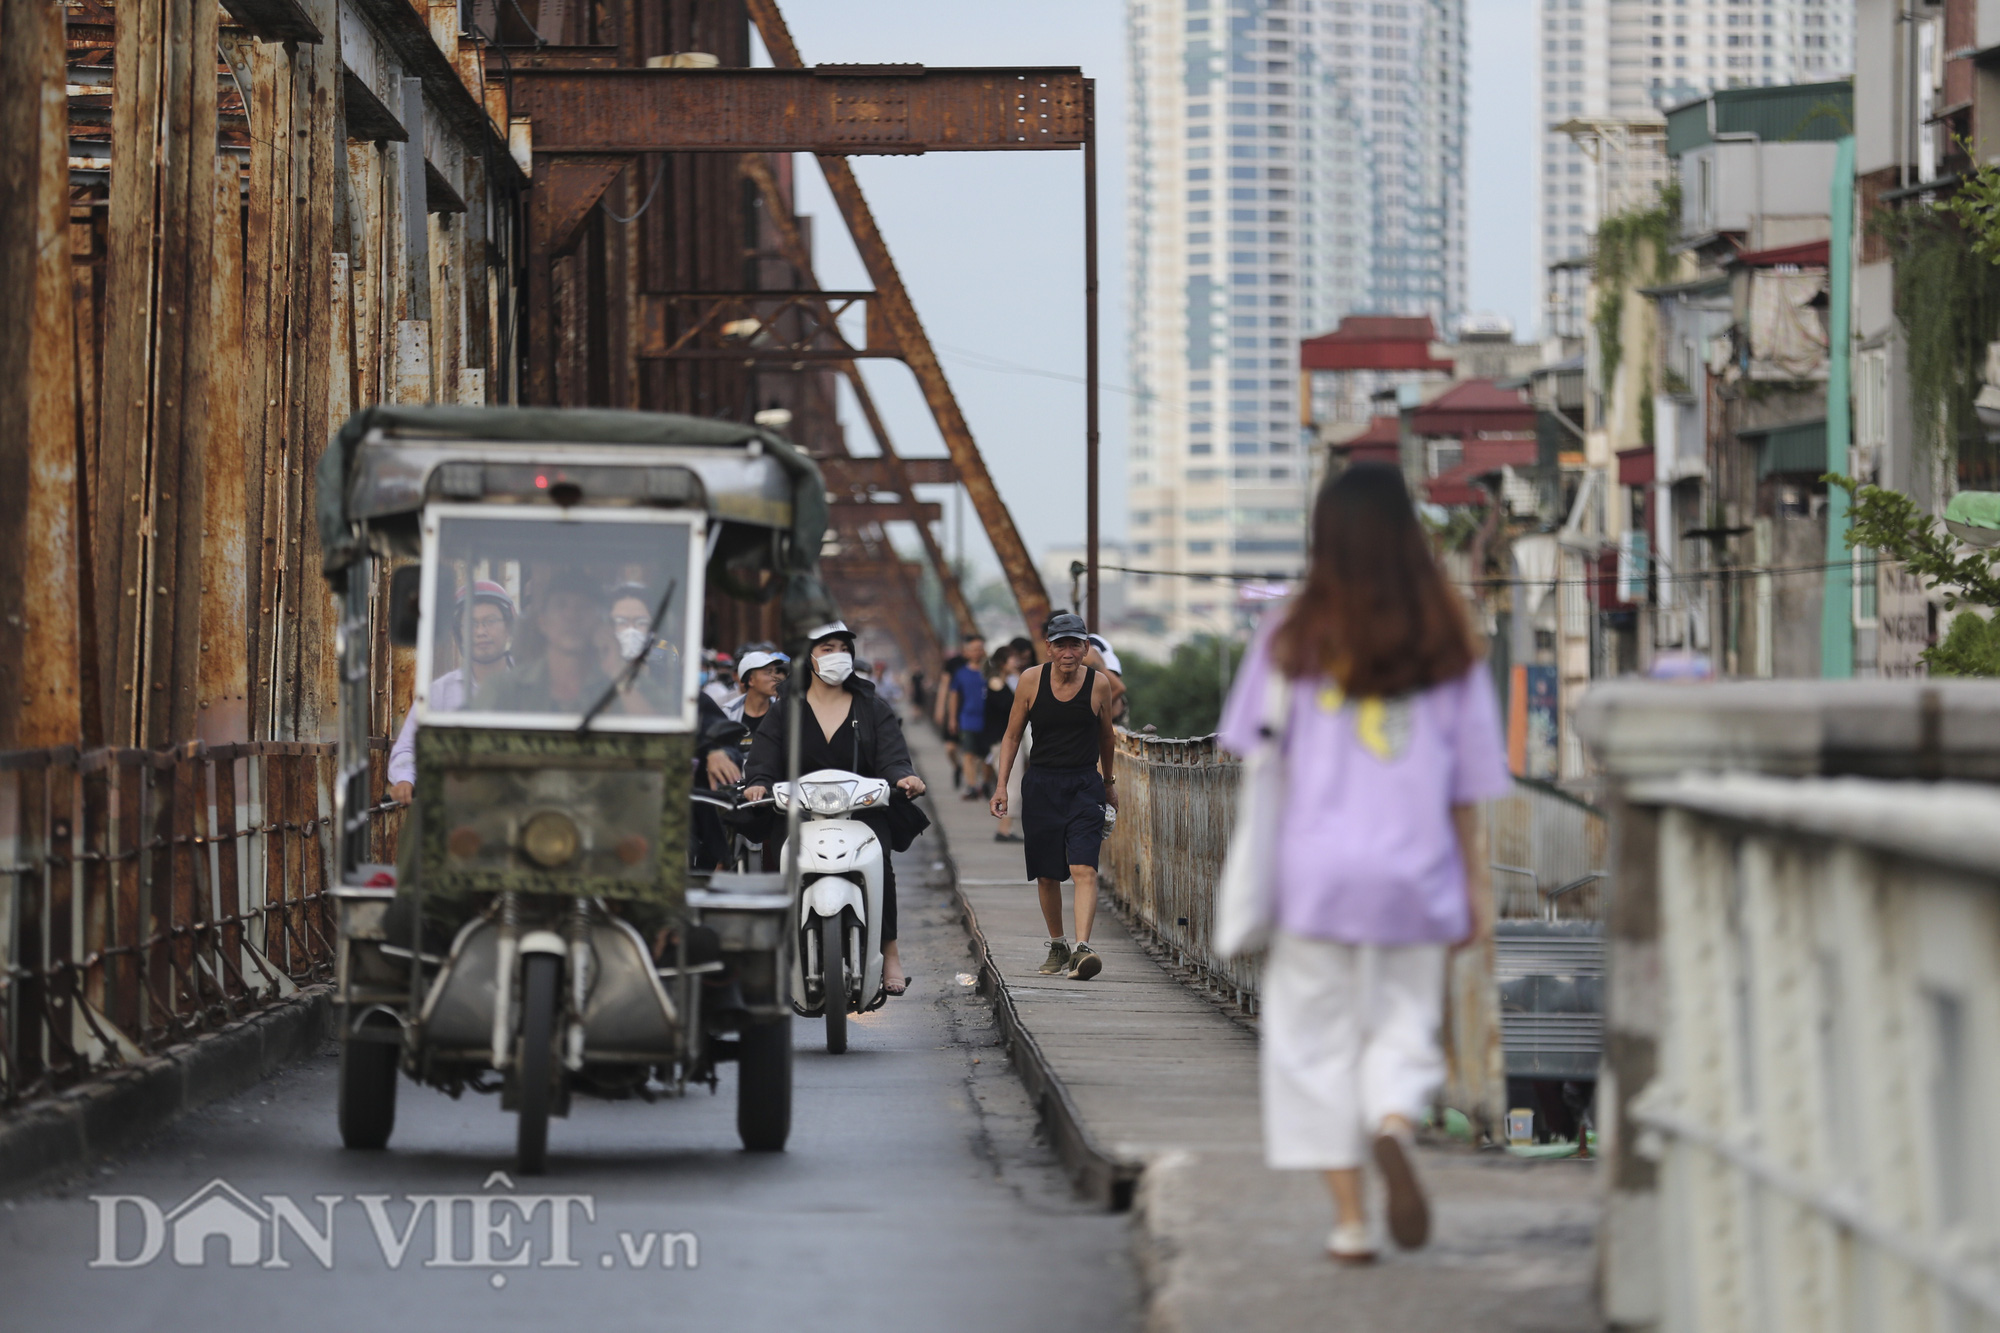 Mặc biển cấm, người dân vẫn vô tư đi bộ trên cầu Long Biên - Ảnh 8.